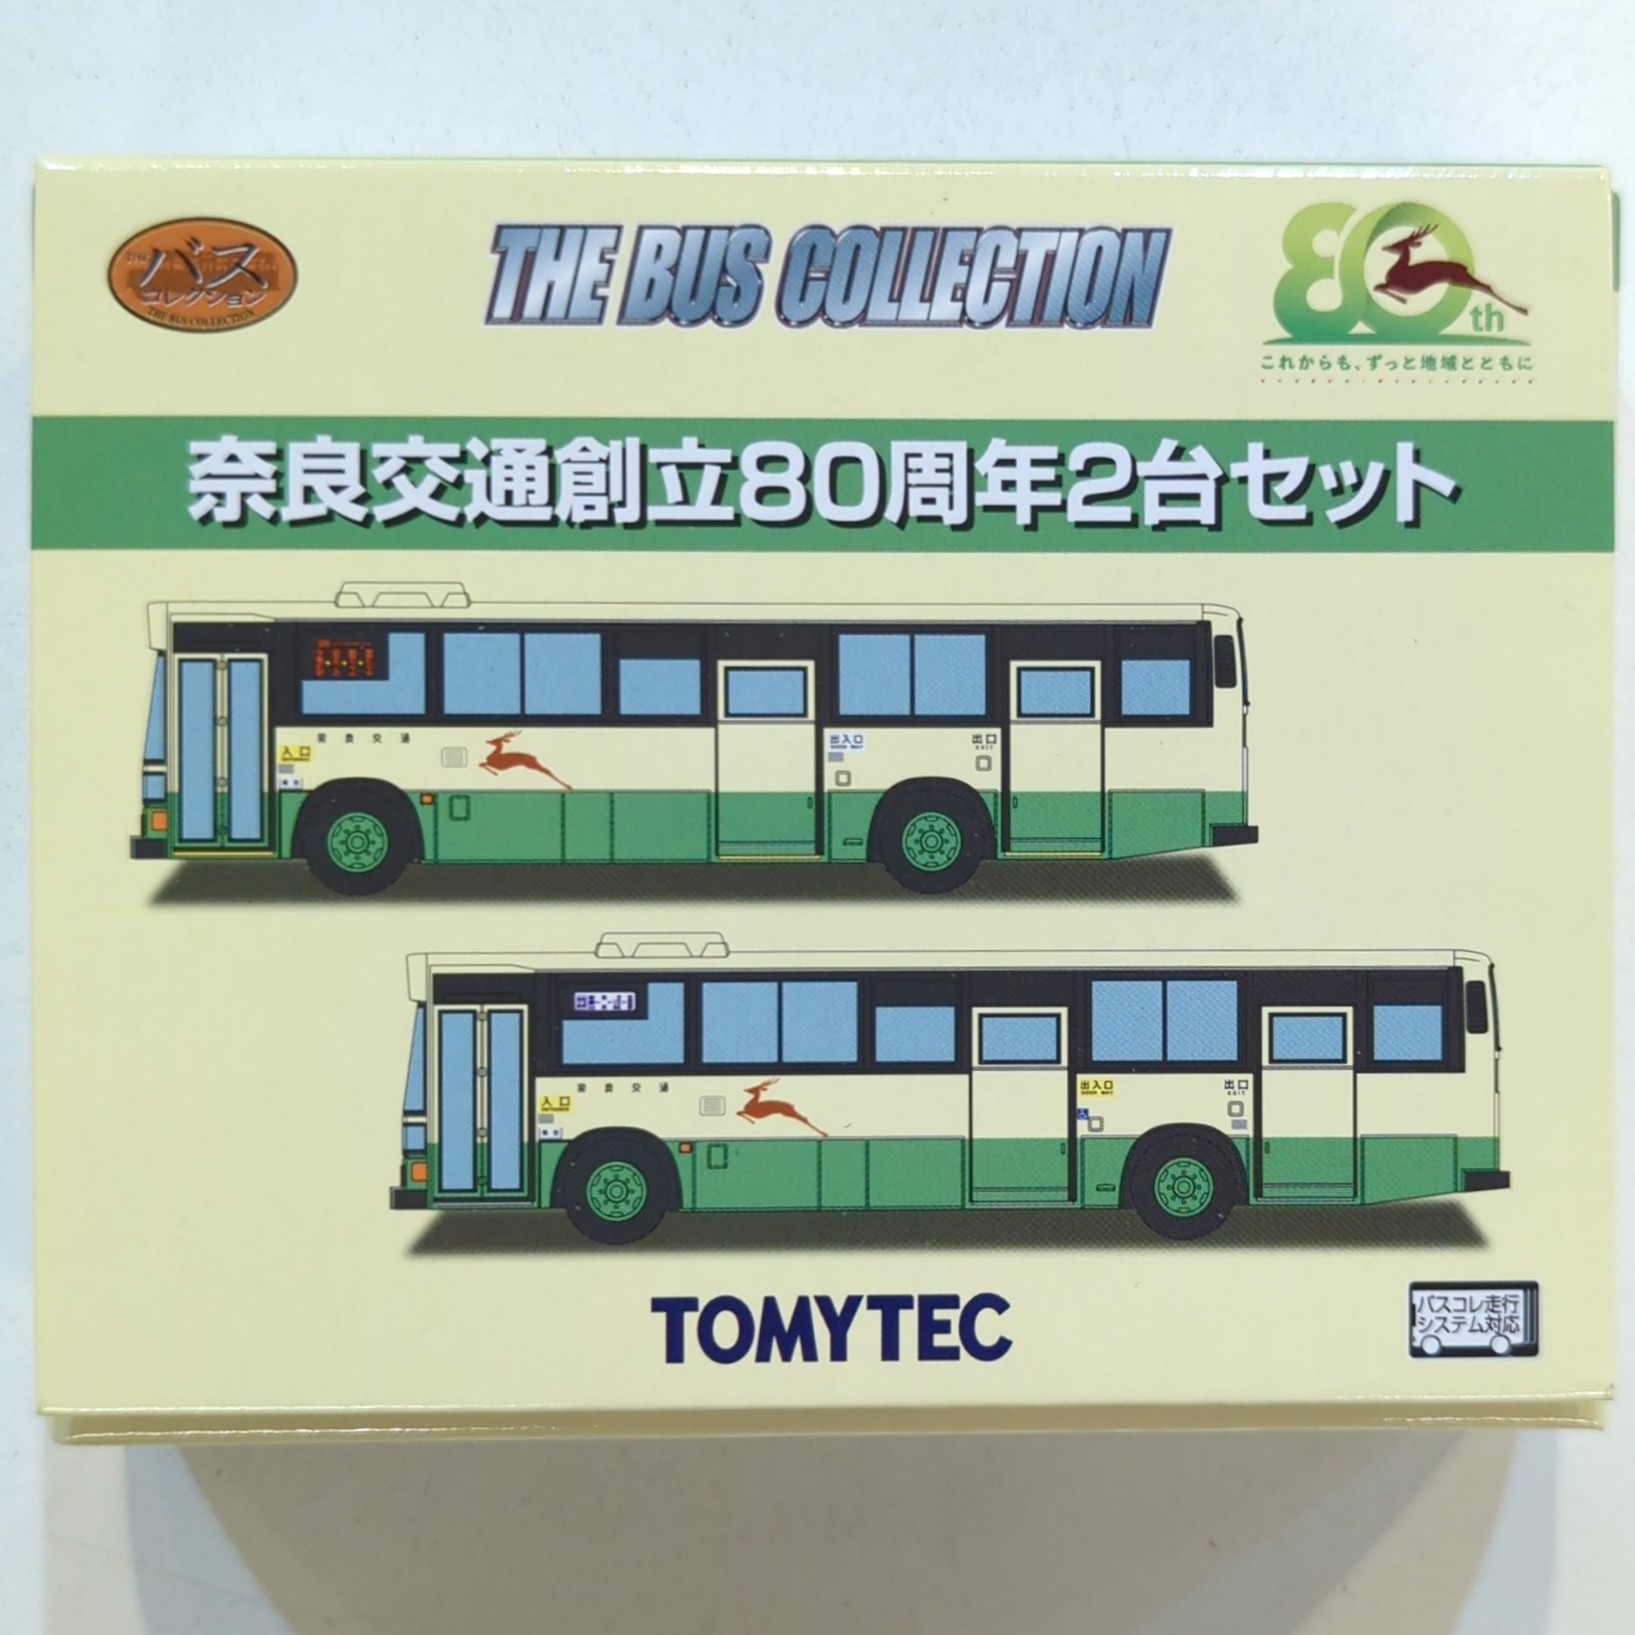 TOMYTEC ザ・バスコレクション 奈良交通創立80周年2台セット (2台